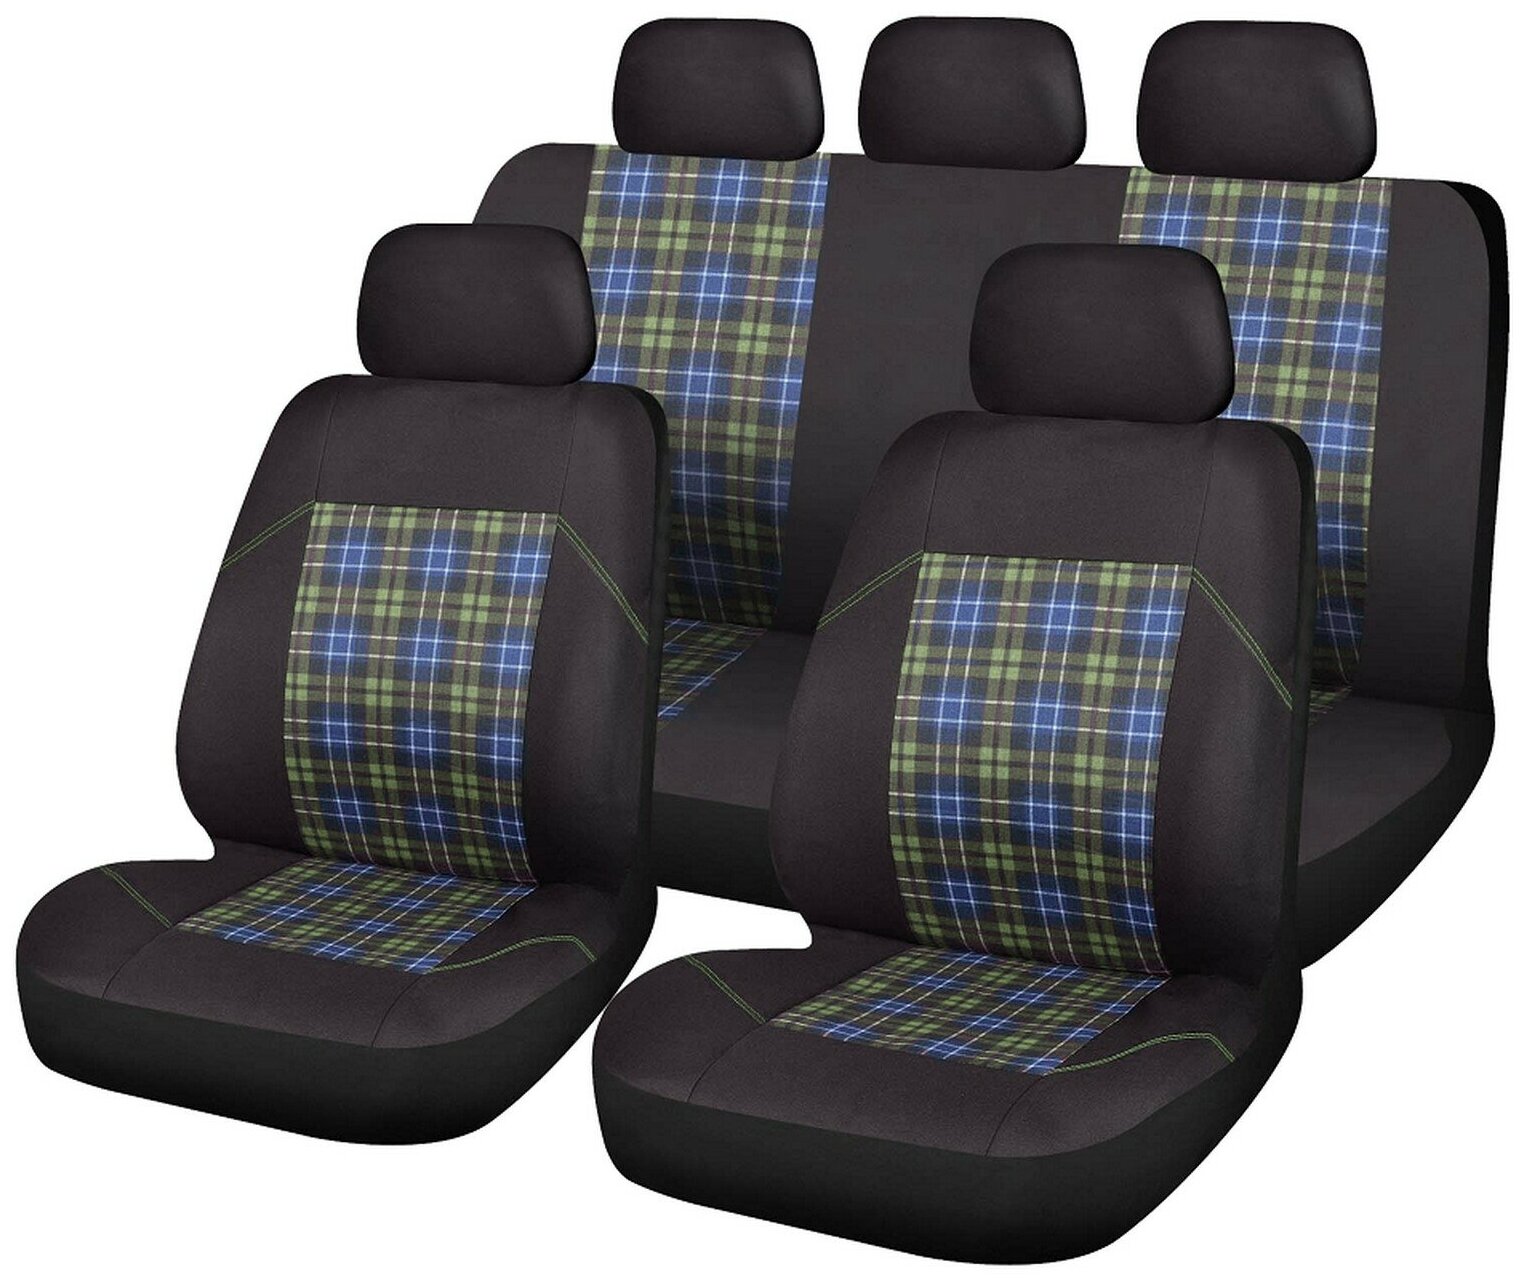 Универсальные чехлы для сидений в авто "Жаккард"черно-серые. Комплект из 9 предметов.